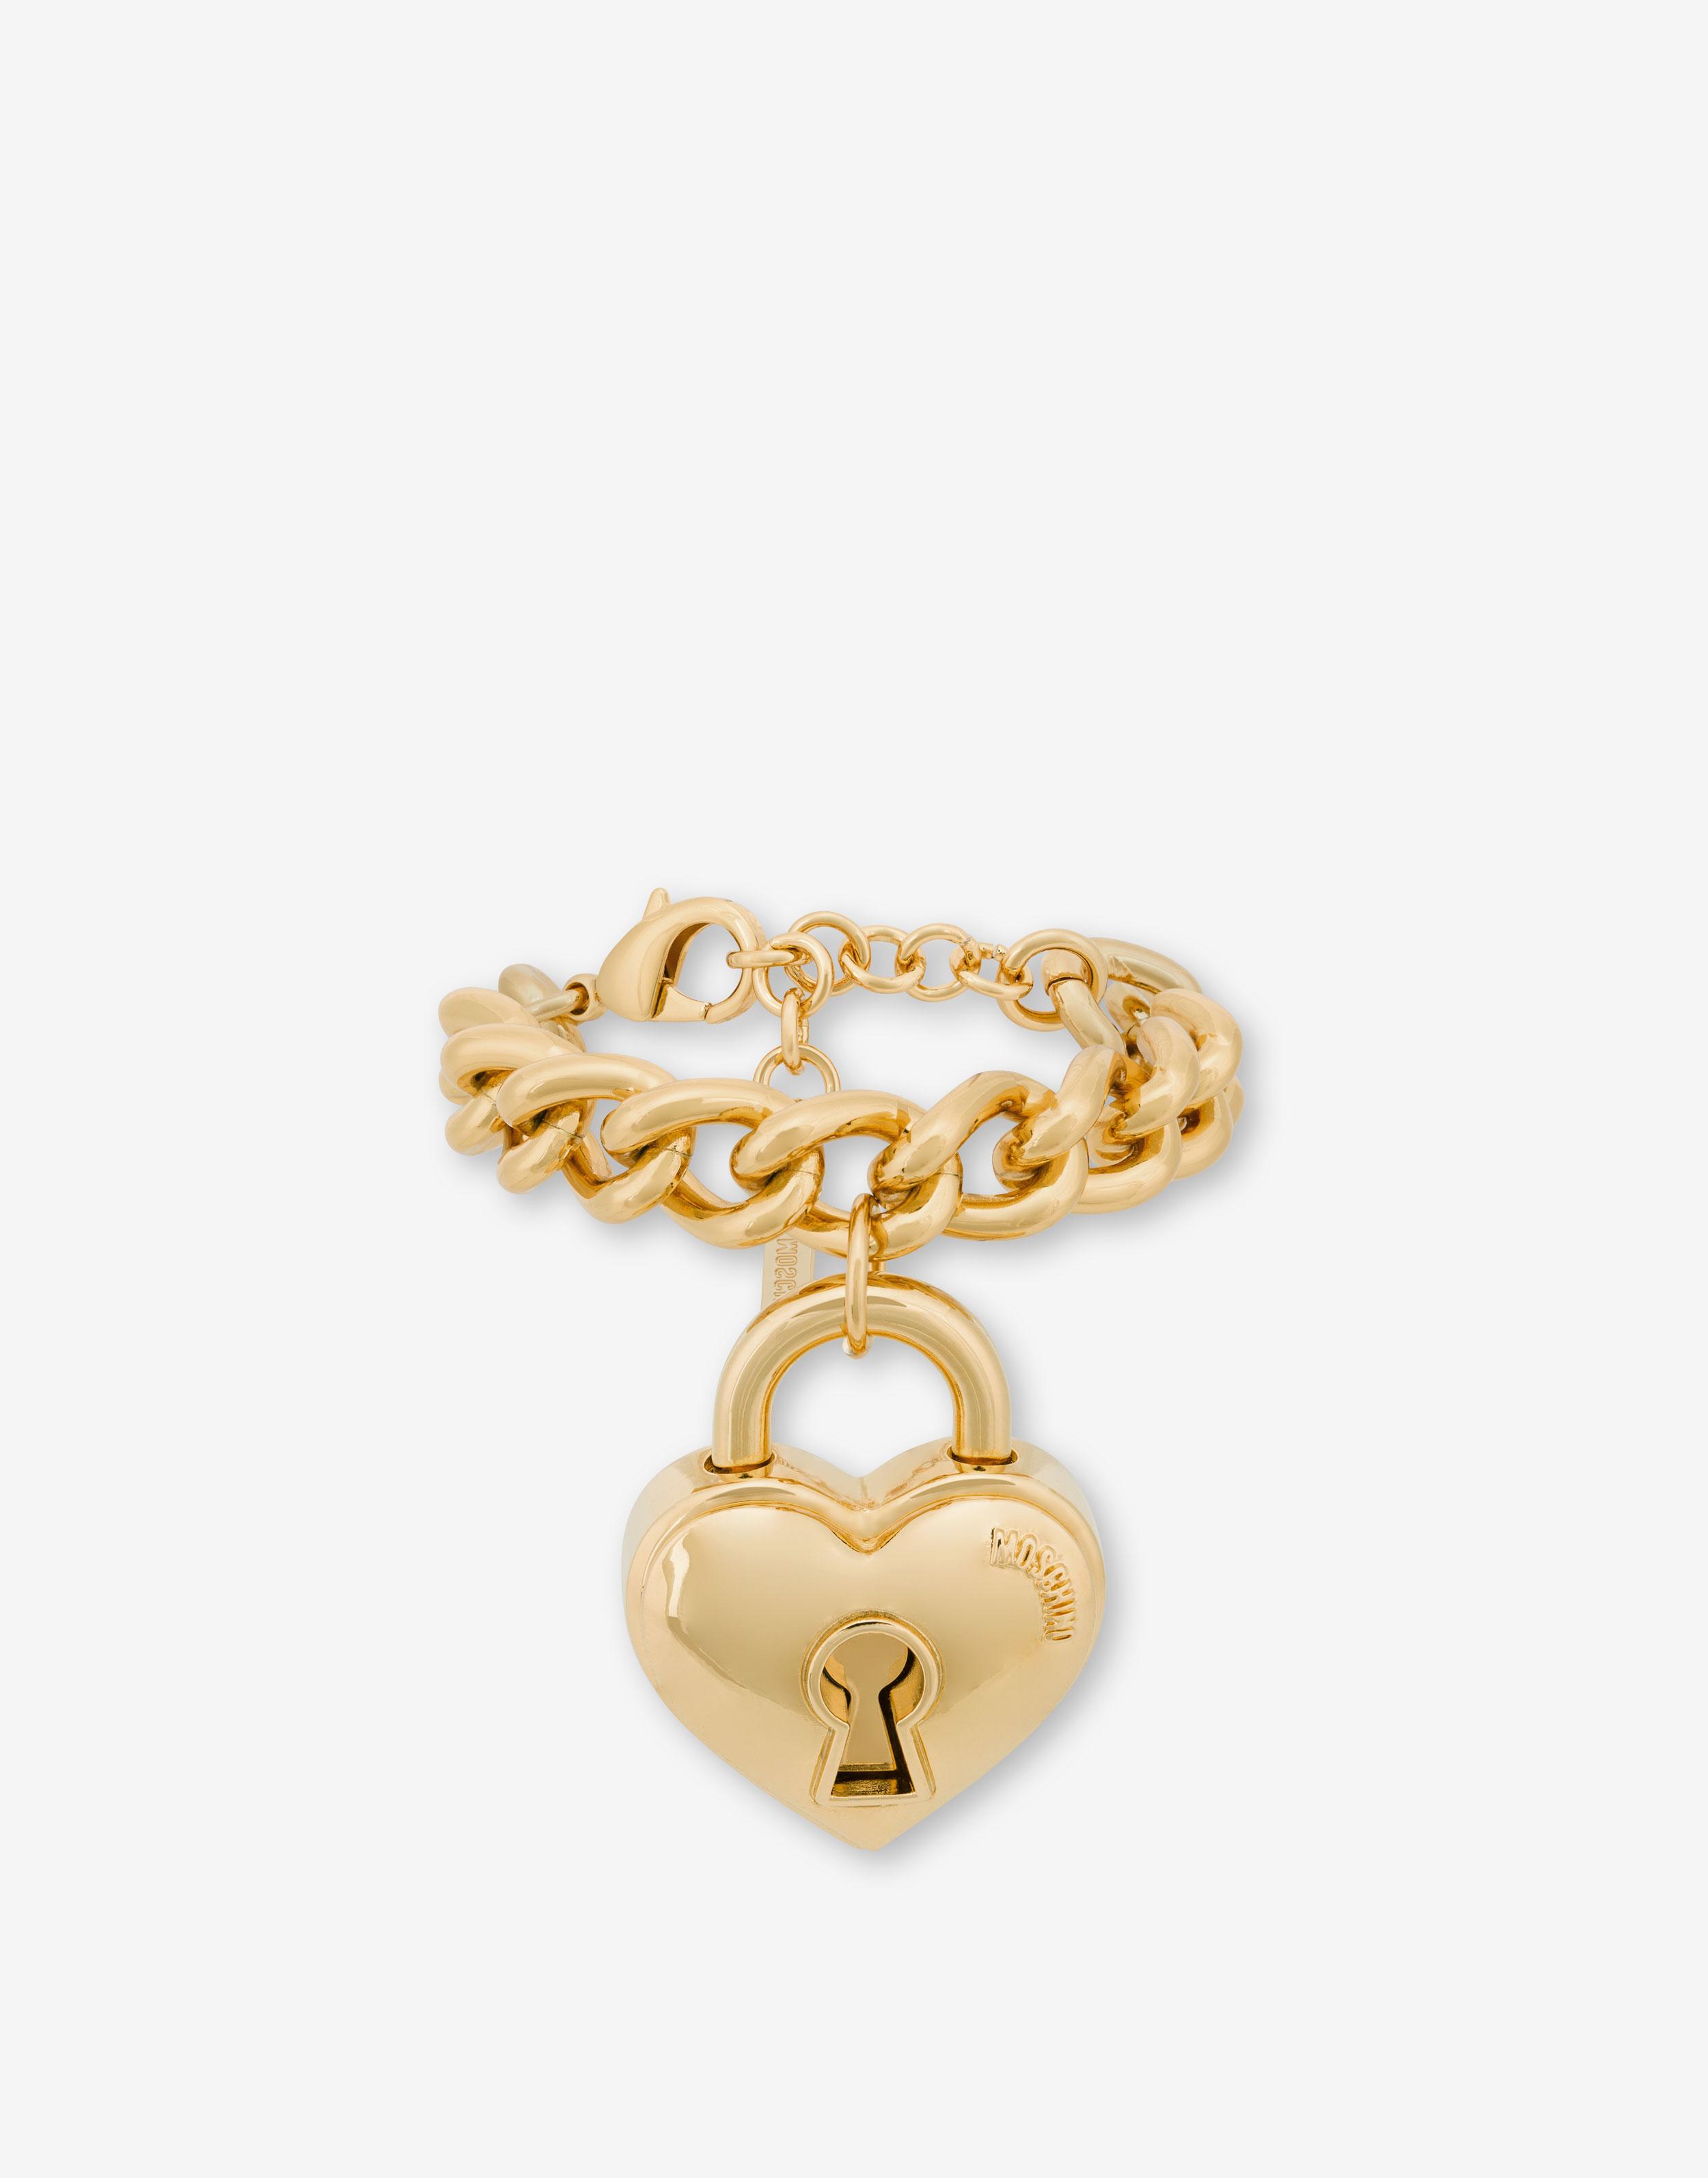 Heart Locket Bracelet in 9ct Yellow Gold